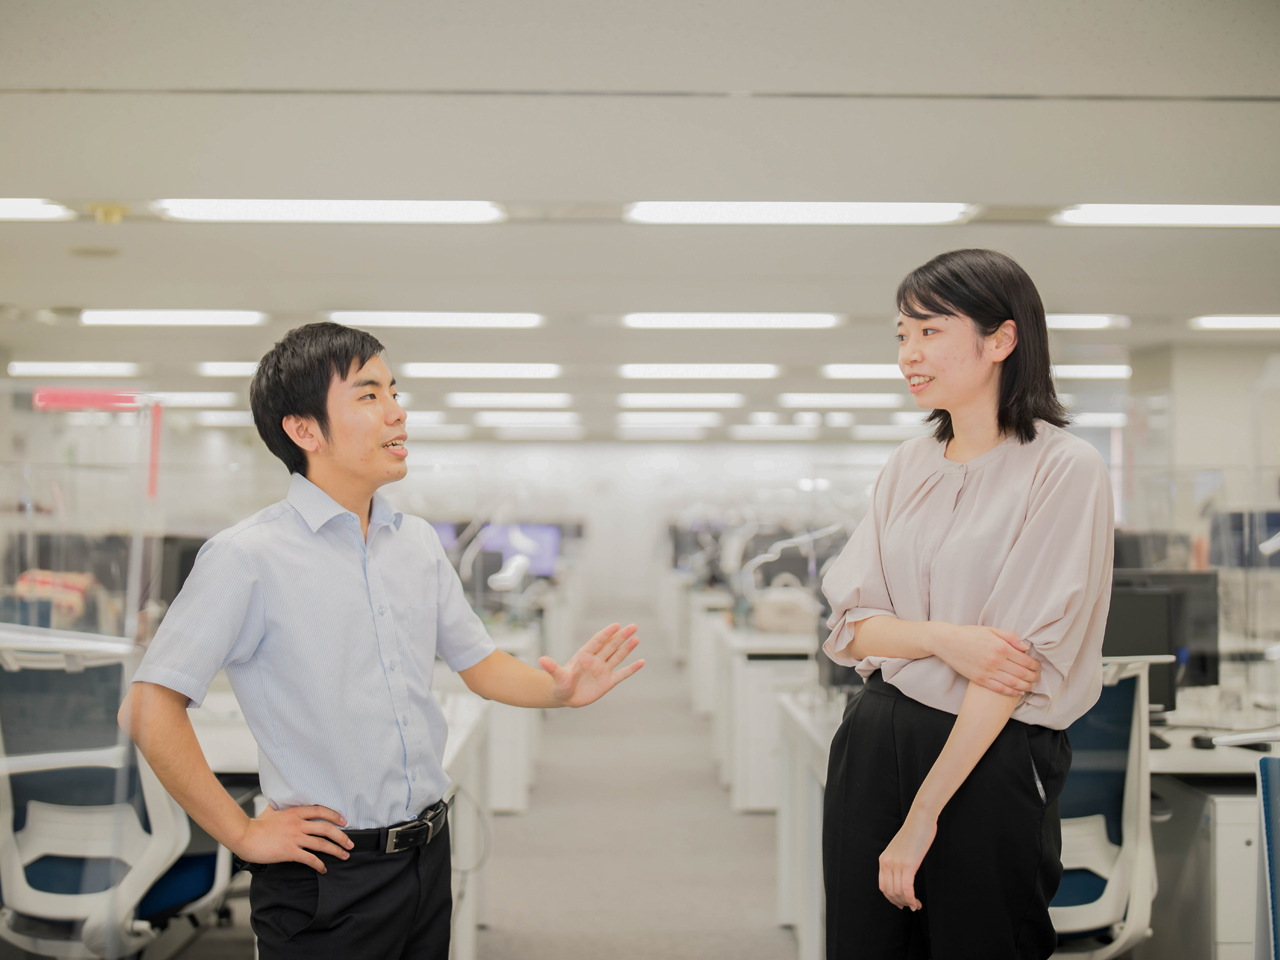 NTTデータは国内最大手のSIerとしてグローバルビジネスも積極的に展開し、高度な技術を持つ日本を代表する存在。三菱重工は、日本最大規模の総合機械メーカーとして、創業以来130年以上も日本のものづくりをリードしてきた存在。同社はそんな両社が組んだ“最強”タッグと言える。